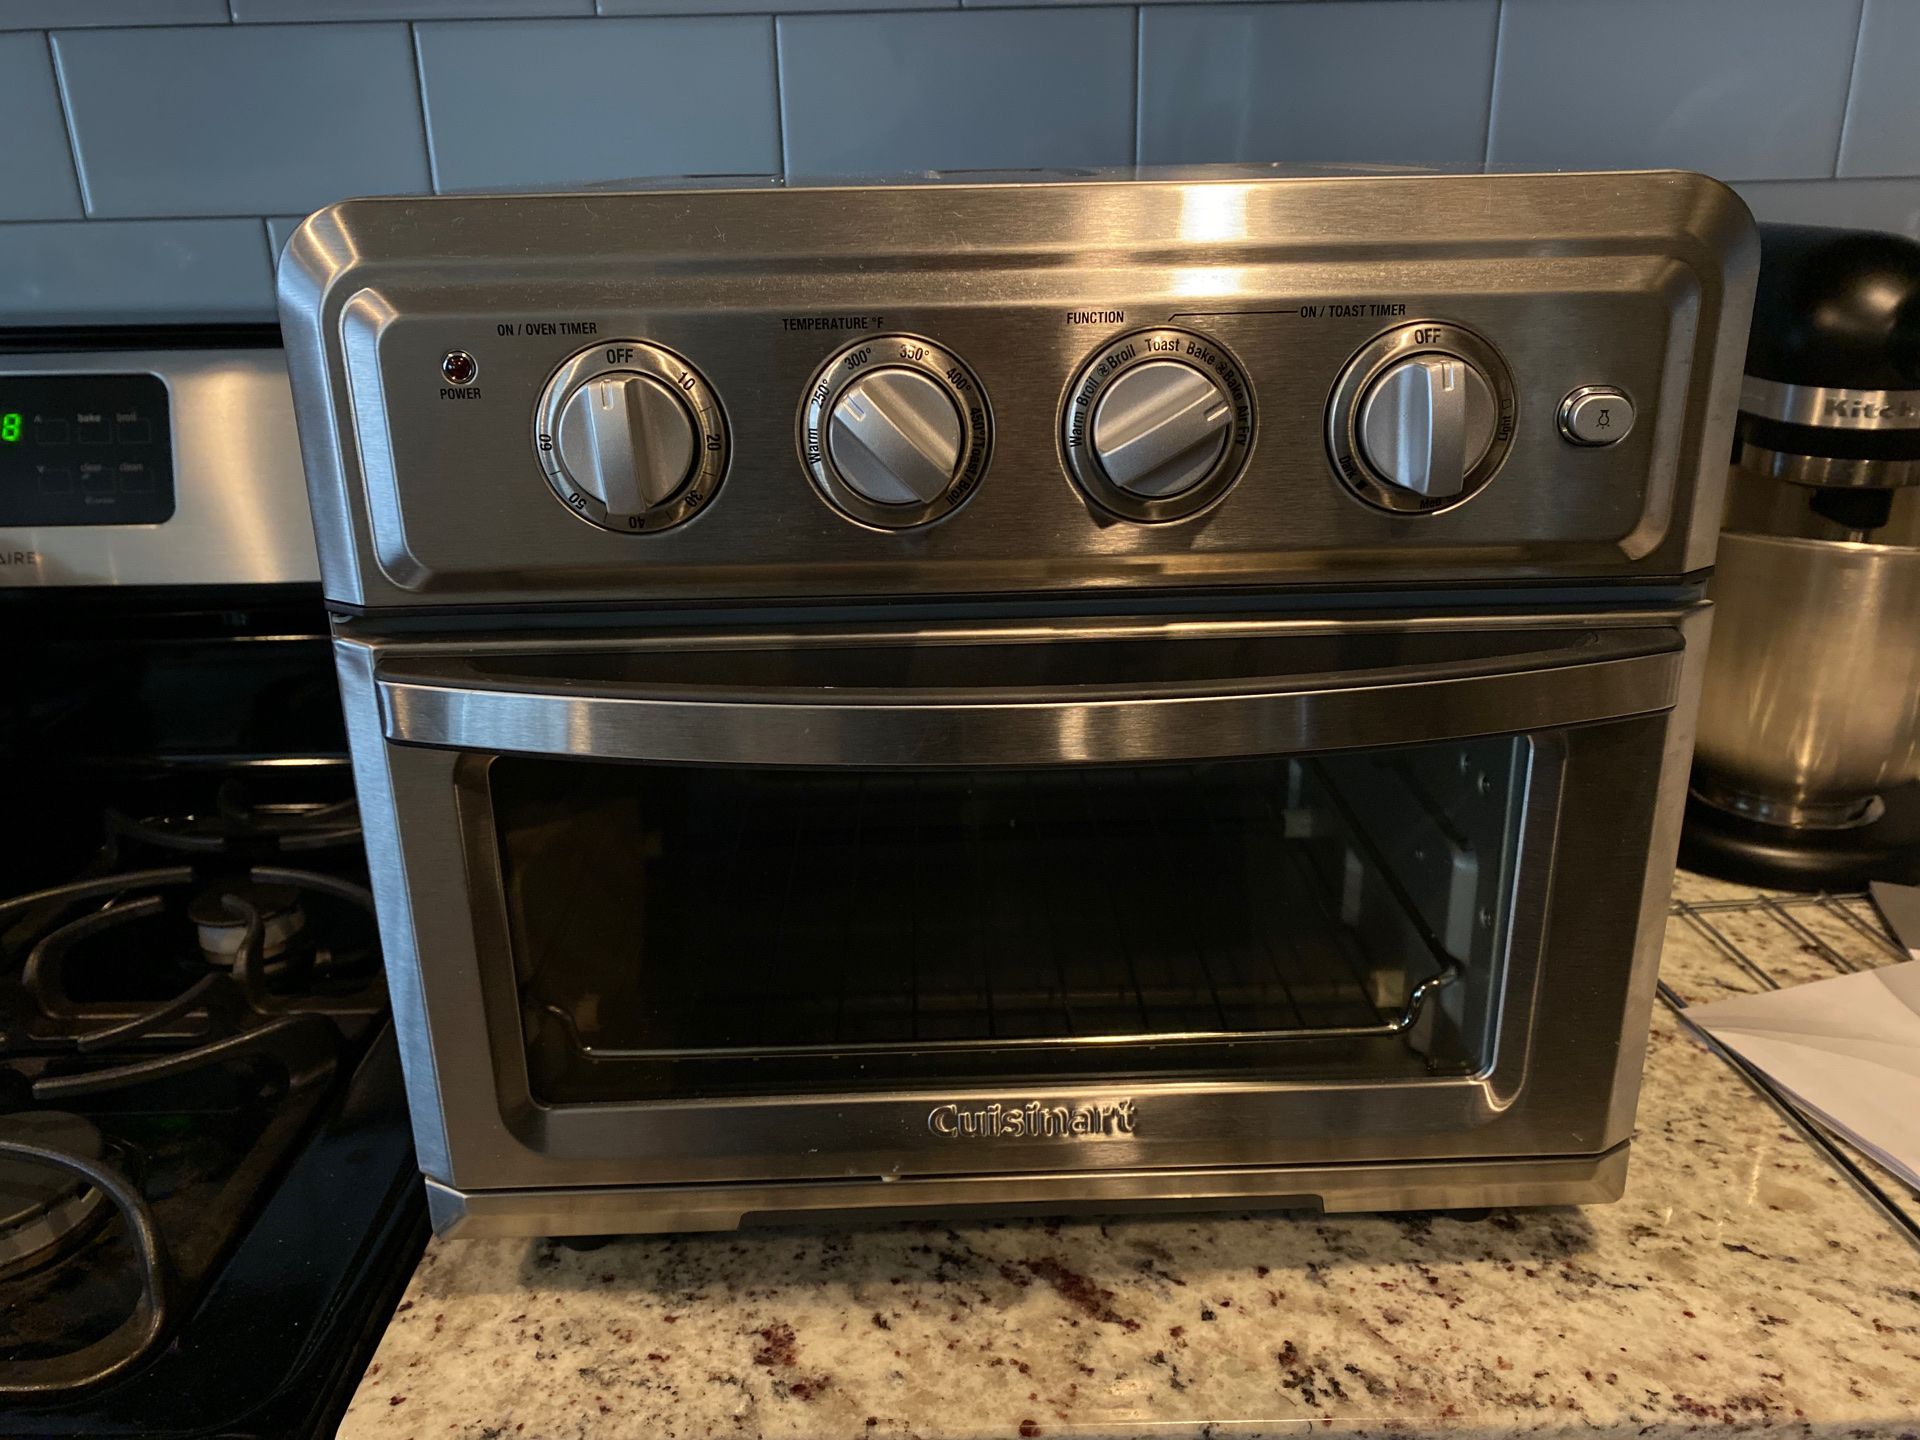 Cusinart toaster oven